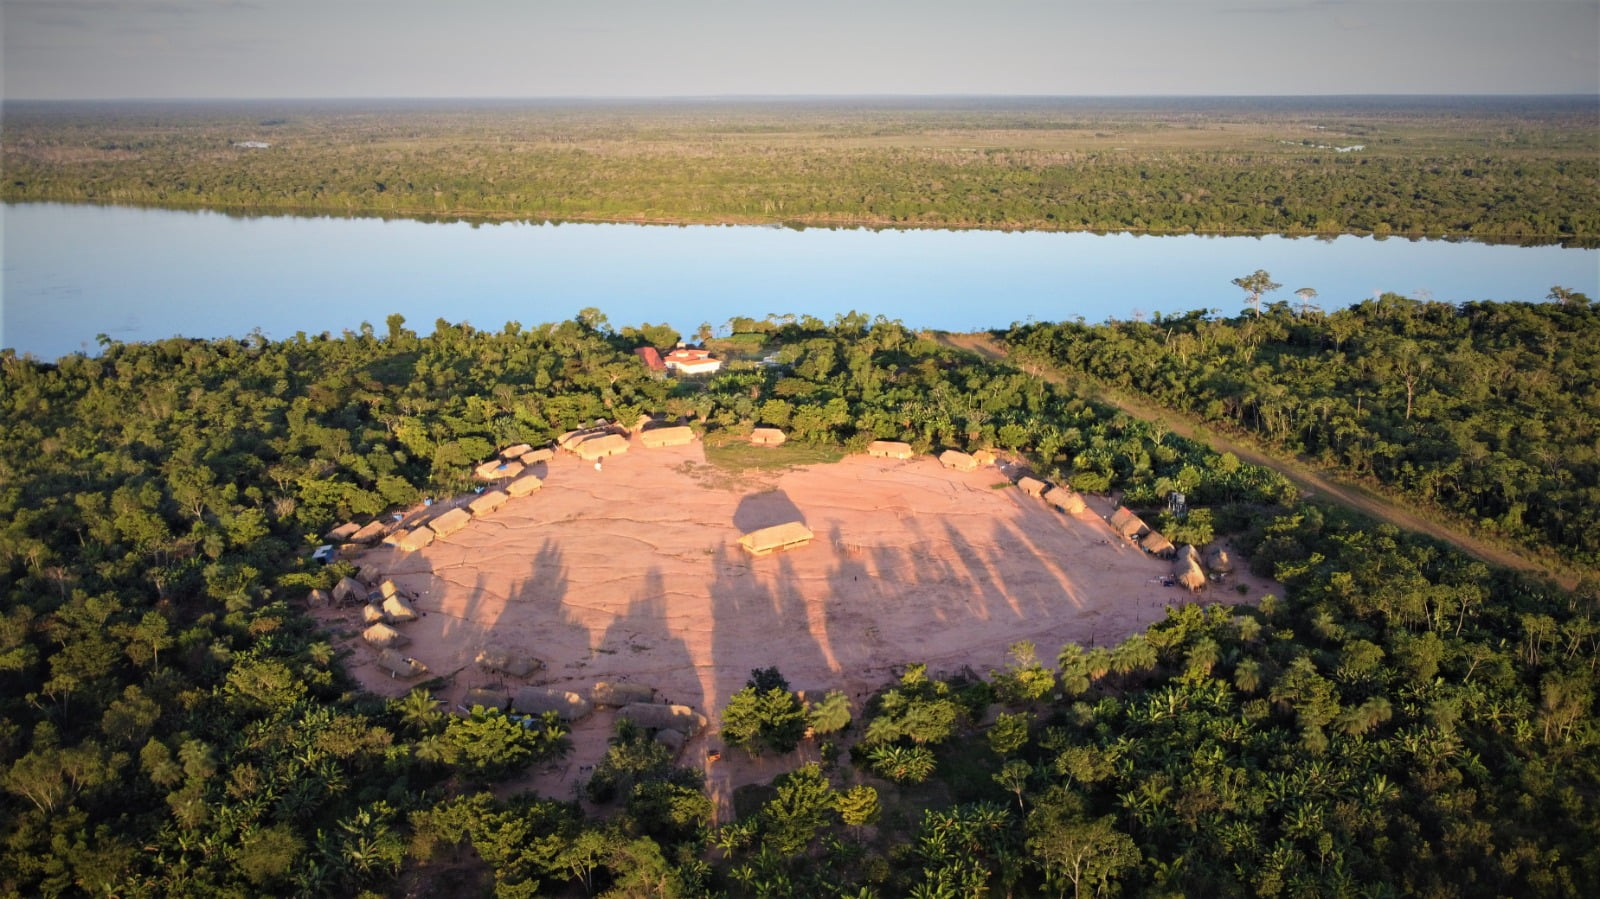 RESPIRE FUNDO: a cidade perdida de 2500 anos da Amazônia – Reflexões sobre civilizações perdidas e futuras